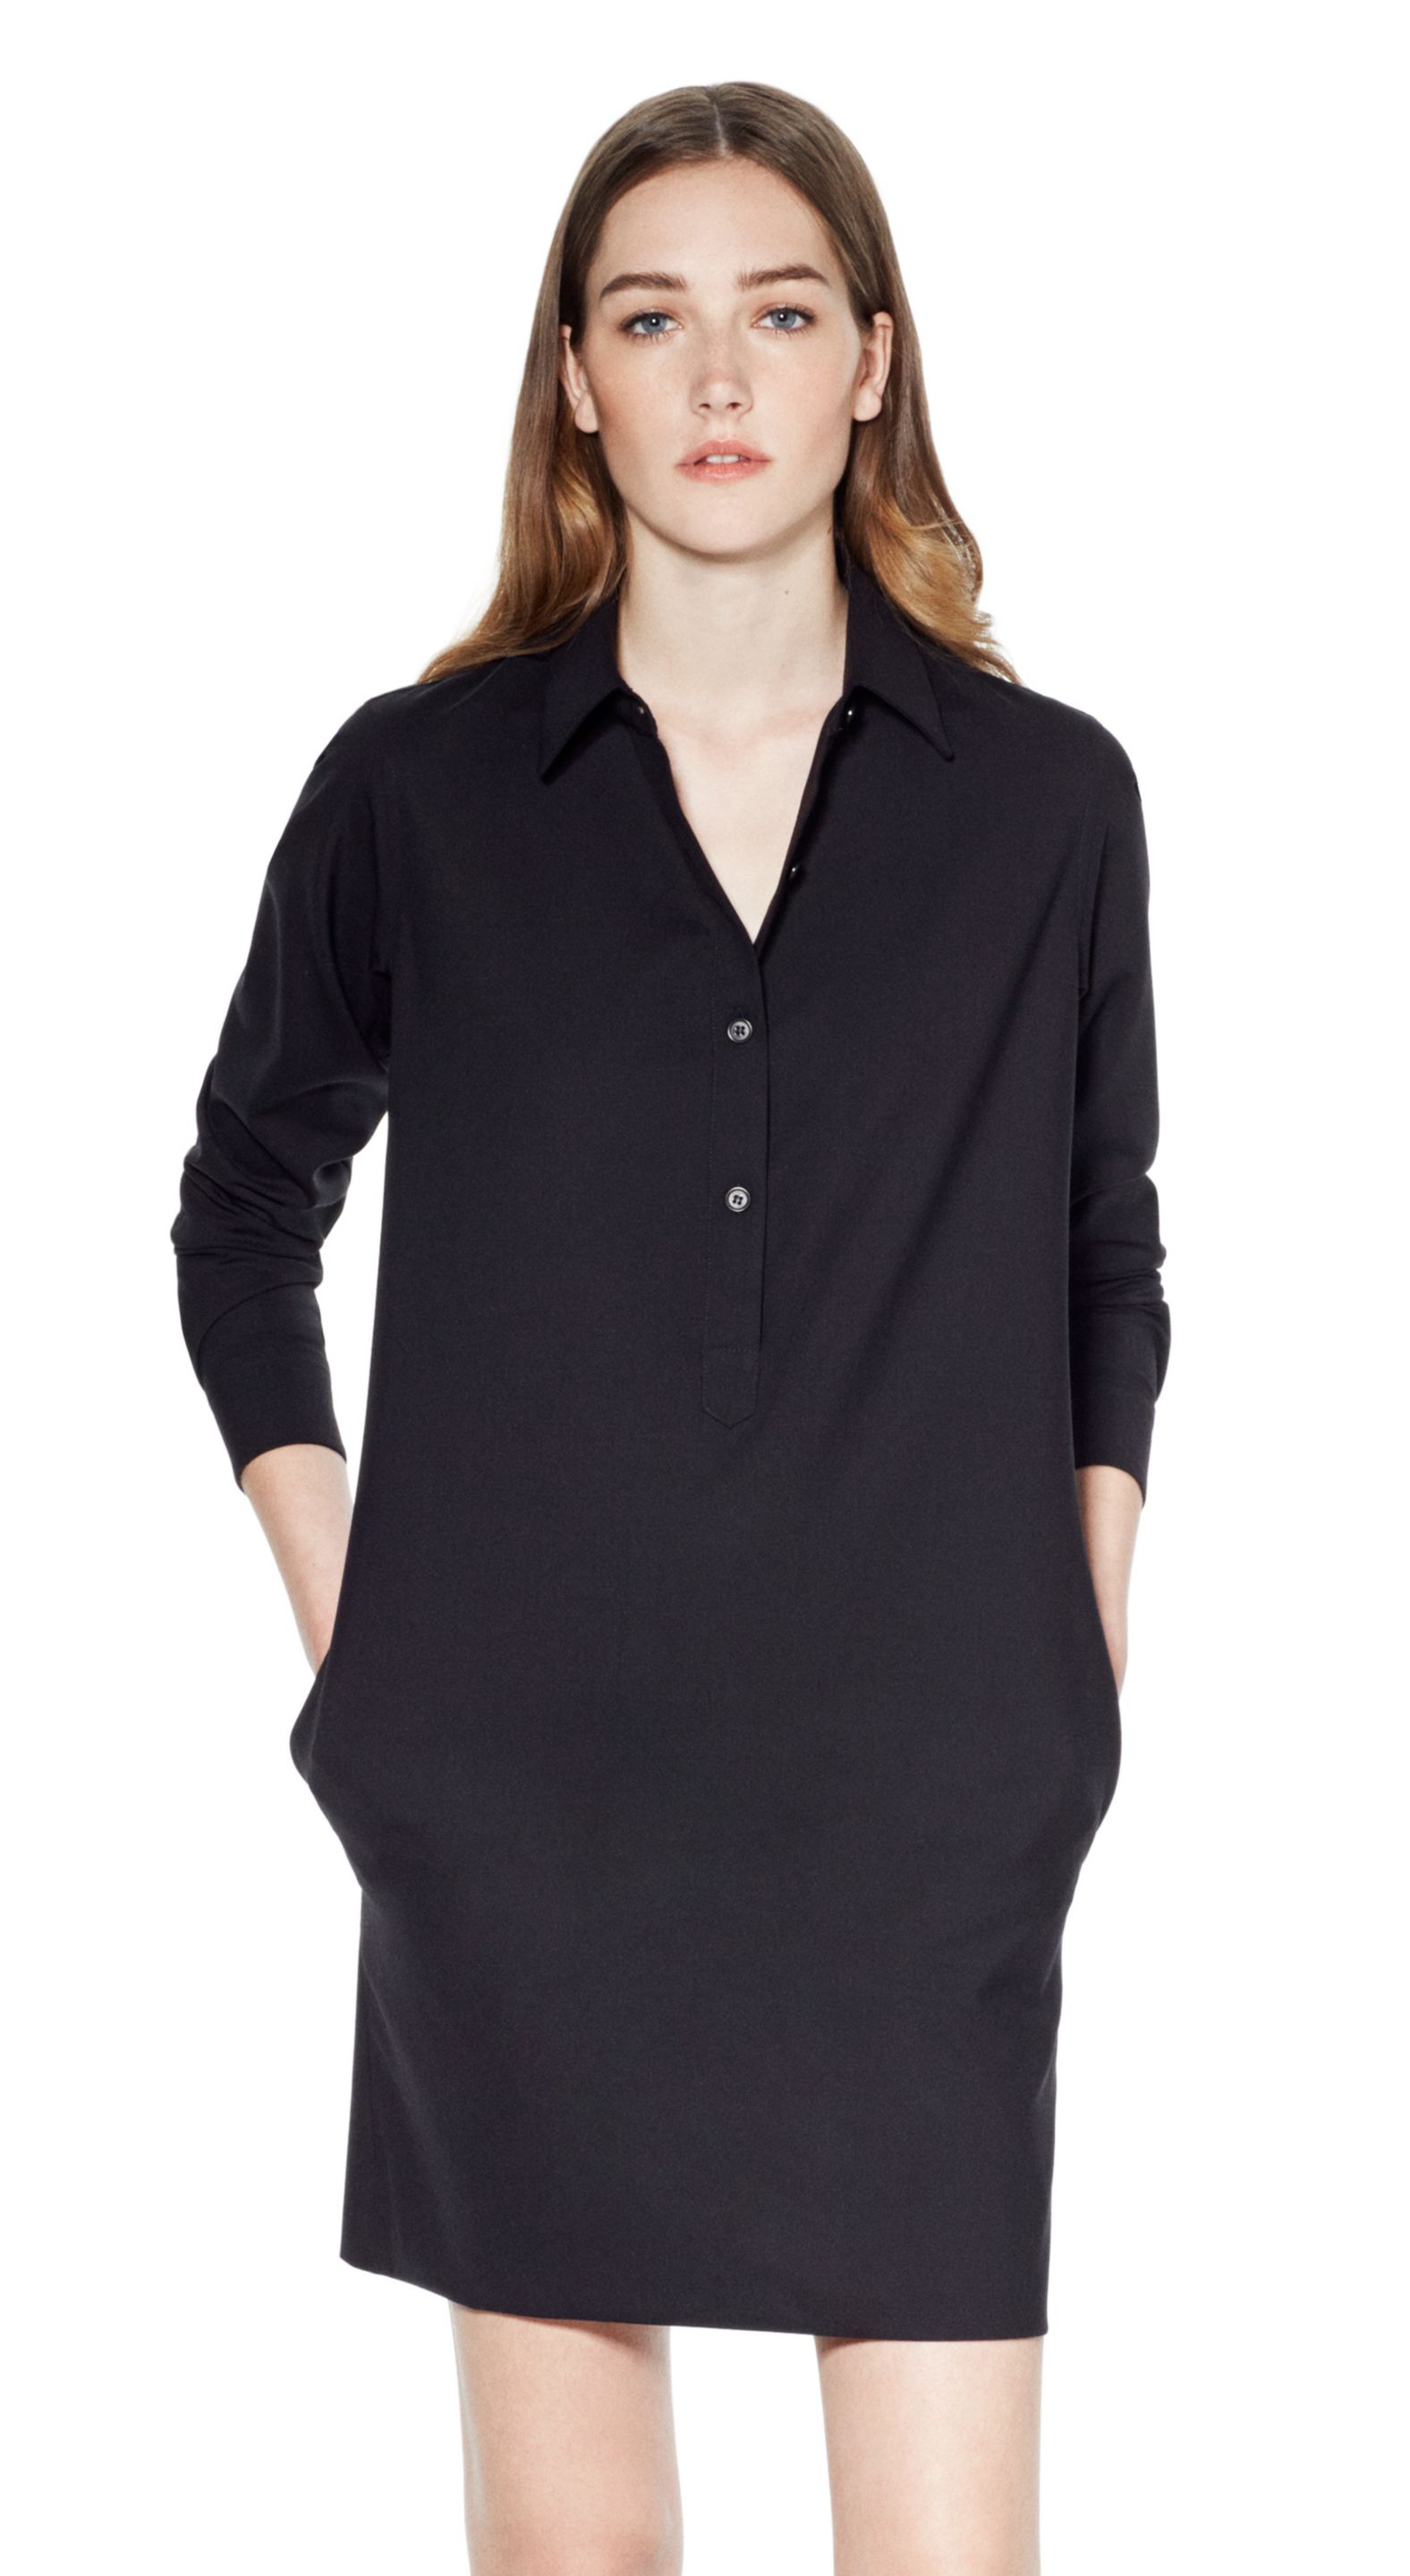 Lyst - Theory Tunic Dress in Drape Wool Blend in Black